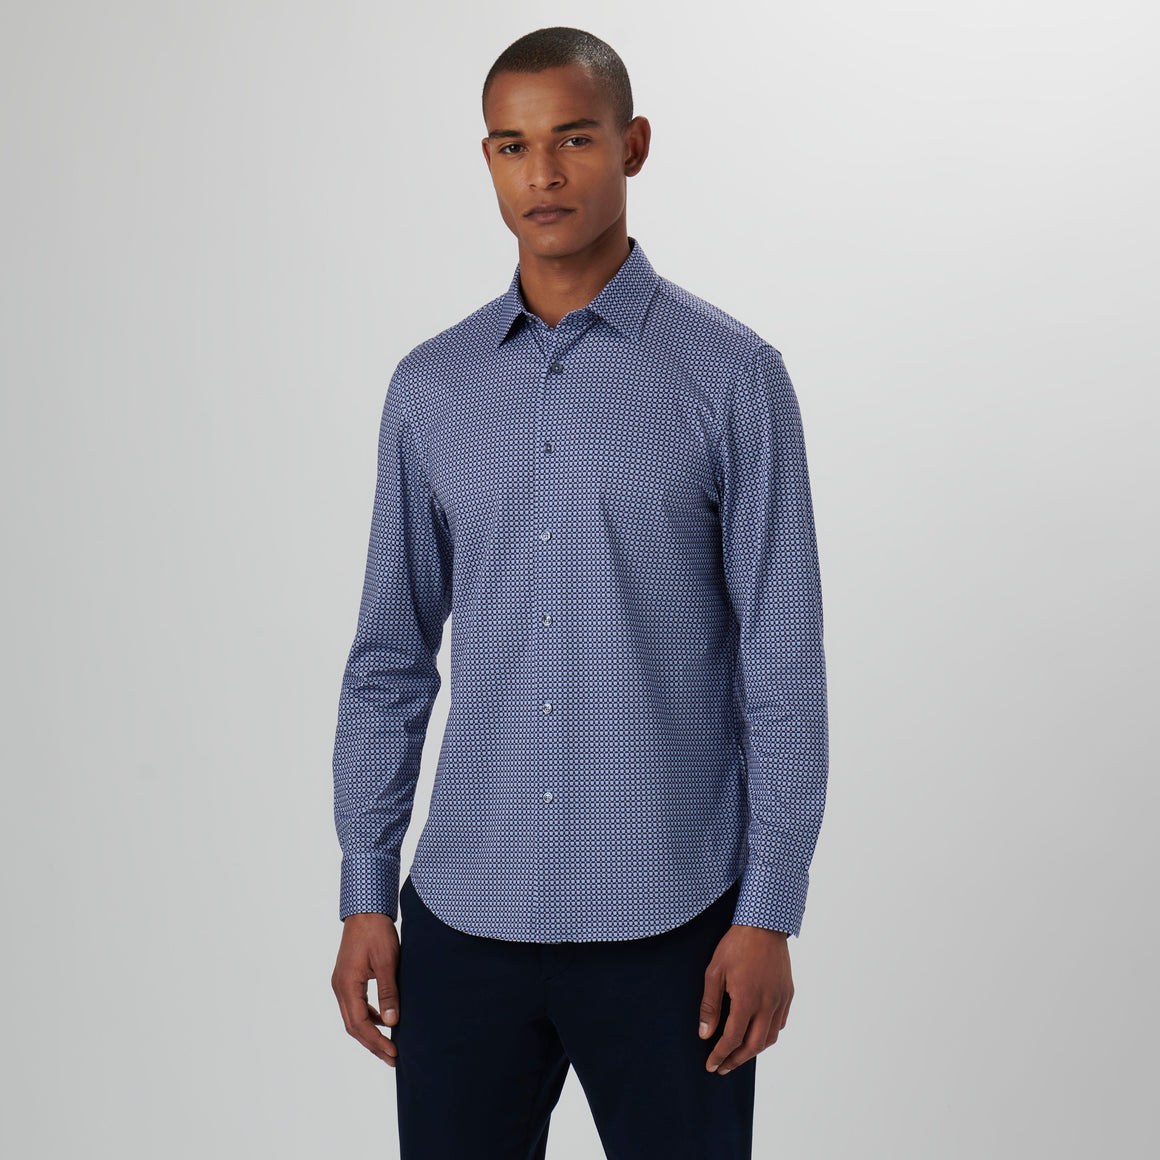 OOOHCotton James Long Sleeve Shirt Air Blue Geo